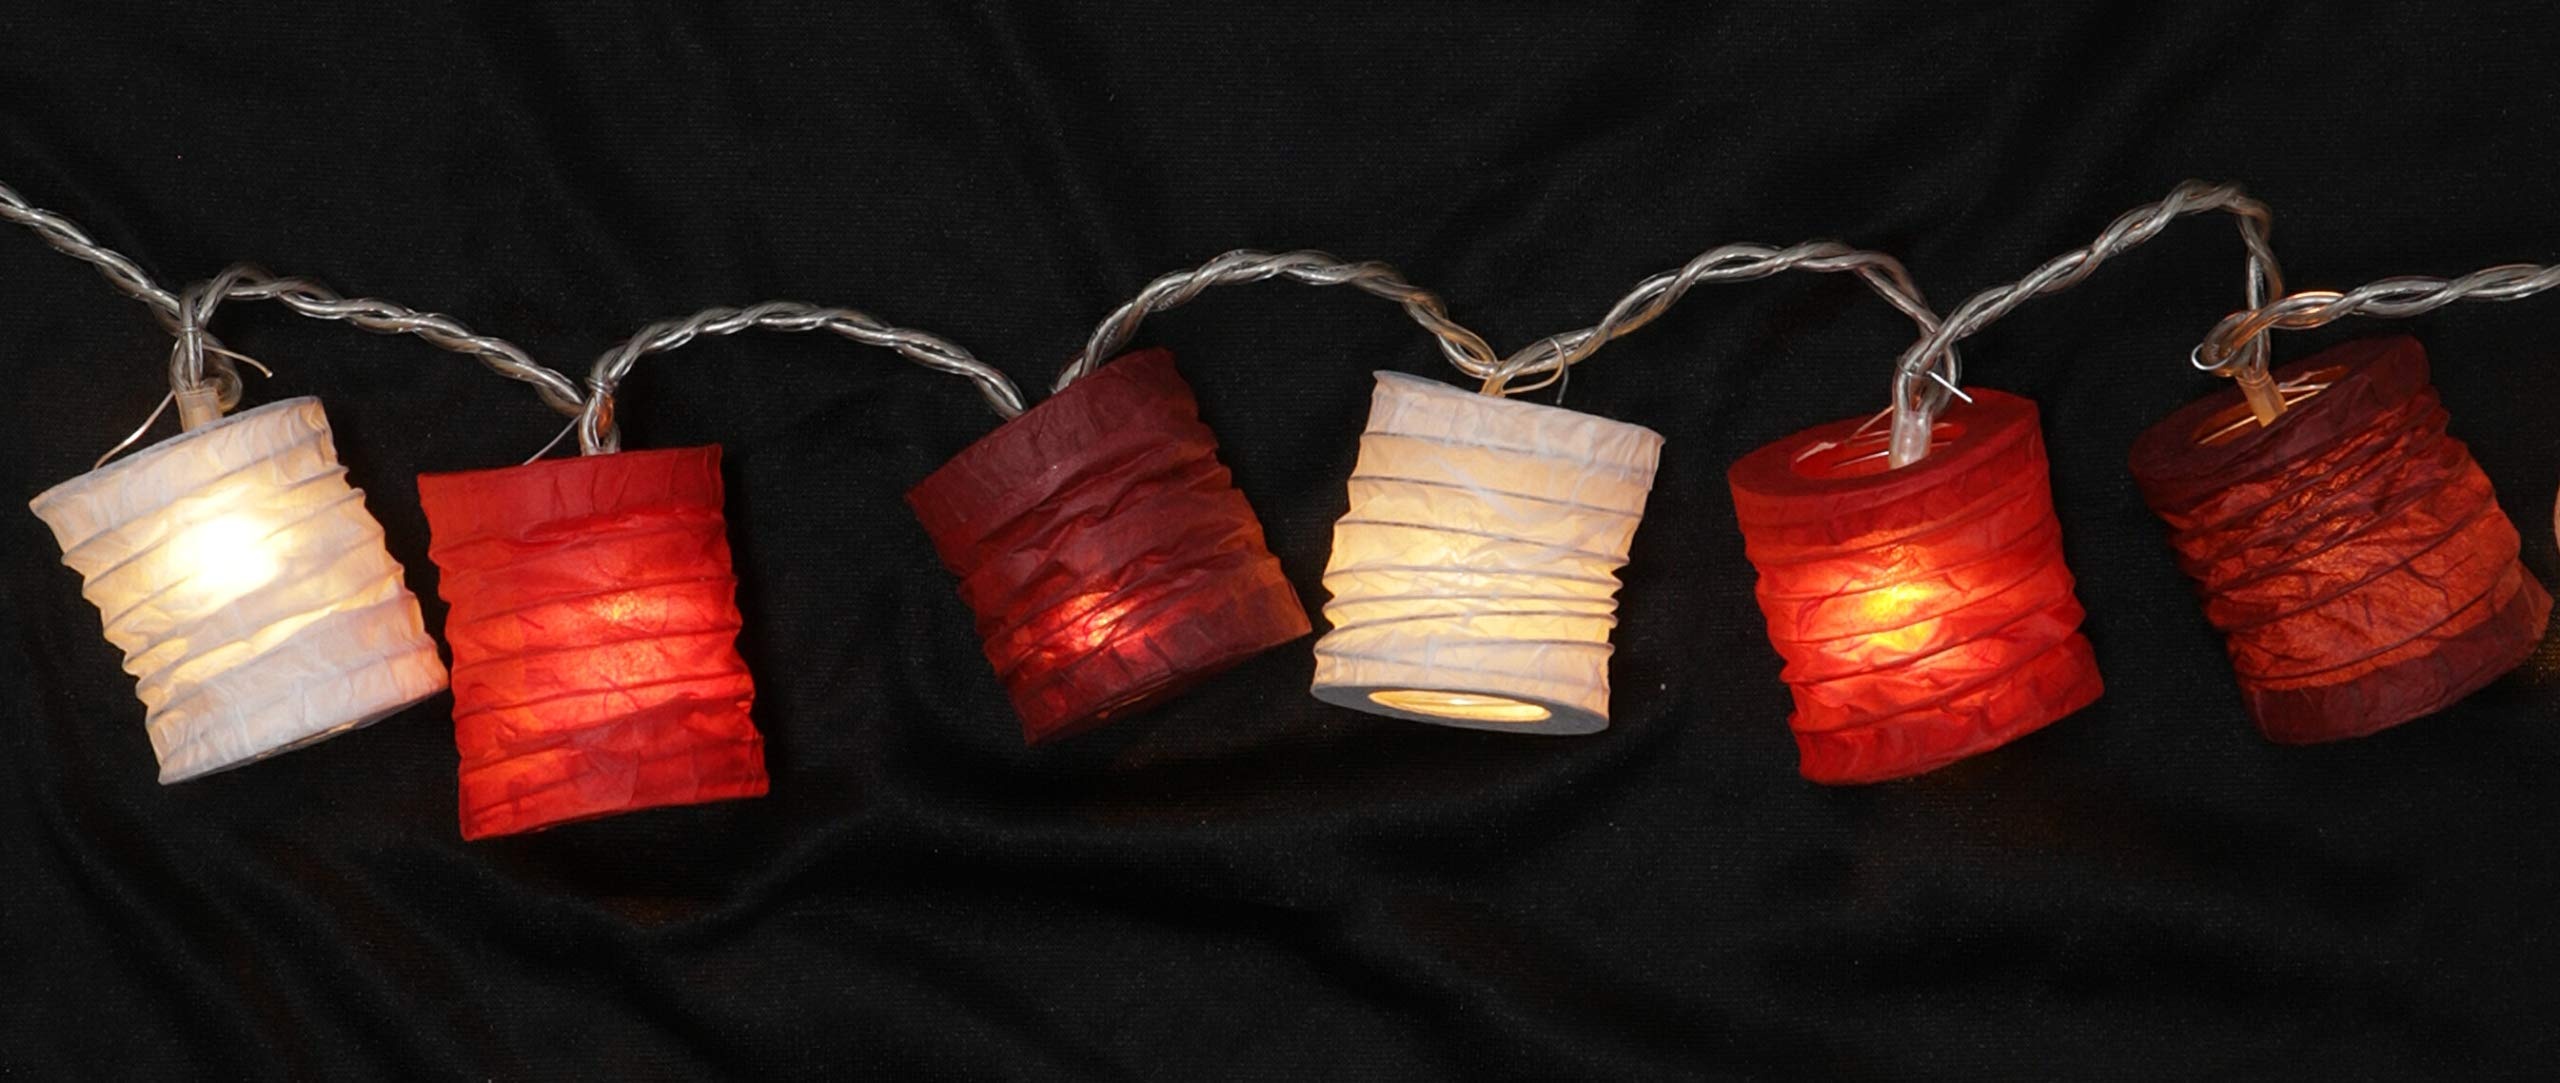 GURU SHOP LED Lichterkette, Kleine Runde Lampions, Laternen - Rot/weiß, Papier, 6x6x5 cm, Lichterketten